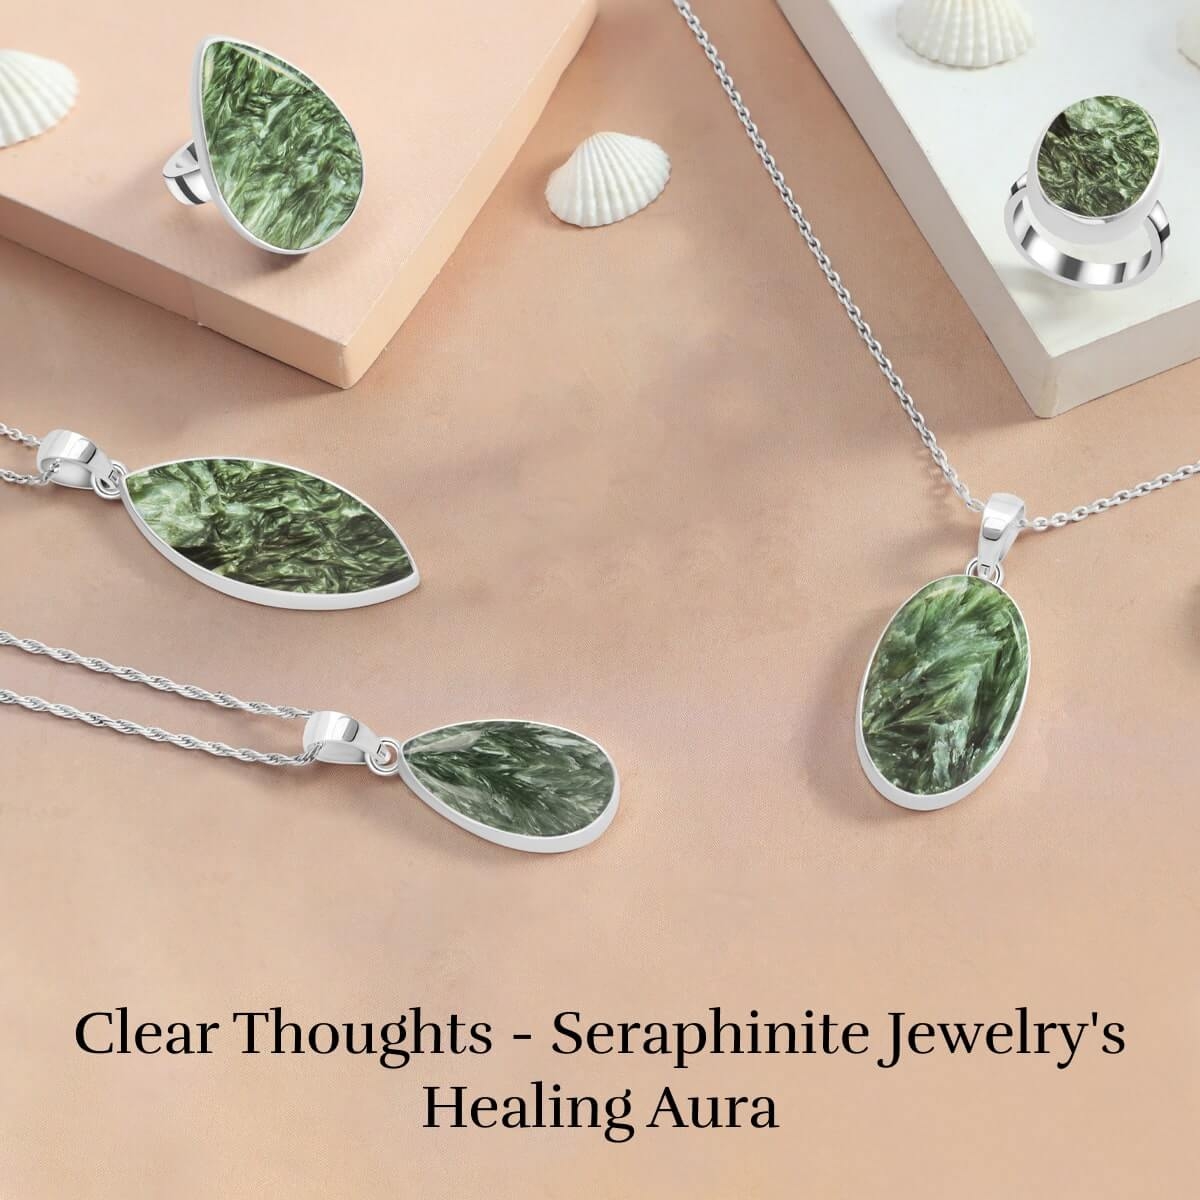 Seraphinite Gemstone Mental Healing Properties